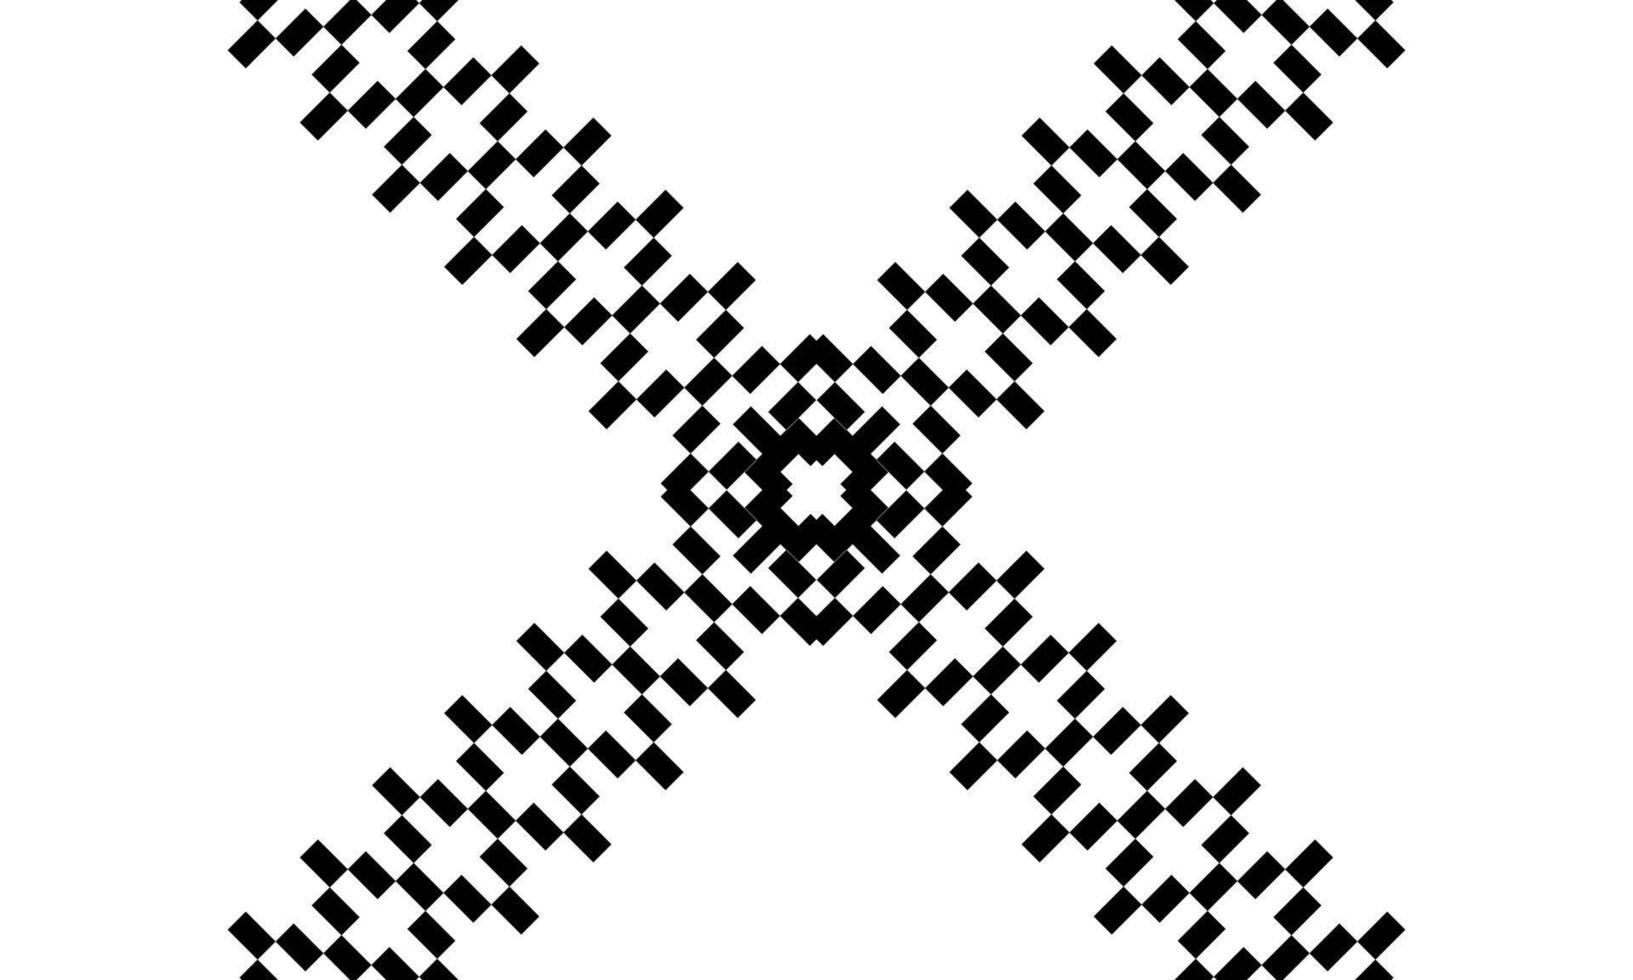 naadloos motief patroon geregeld van rechthoek samenstelling voor overladen, decoratie, achtergrond, website of grafisch ontwerp element. vector illustratie